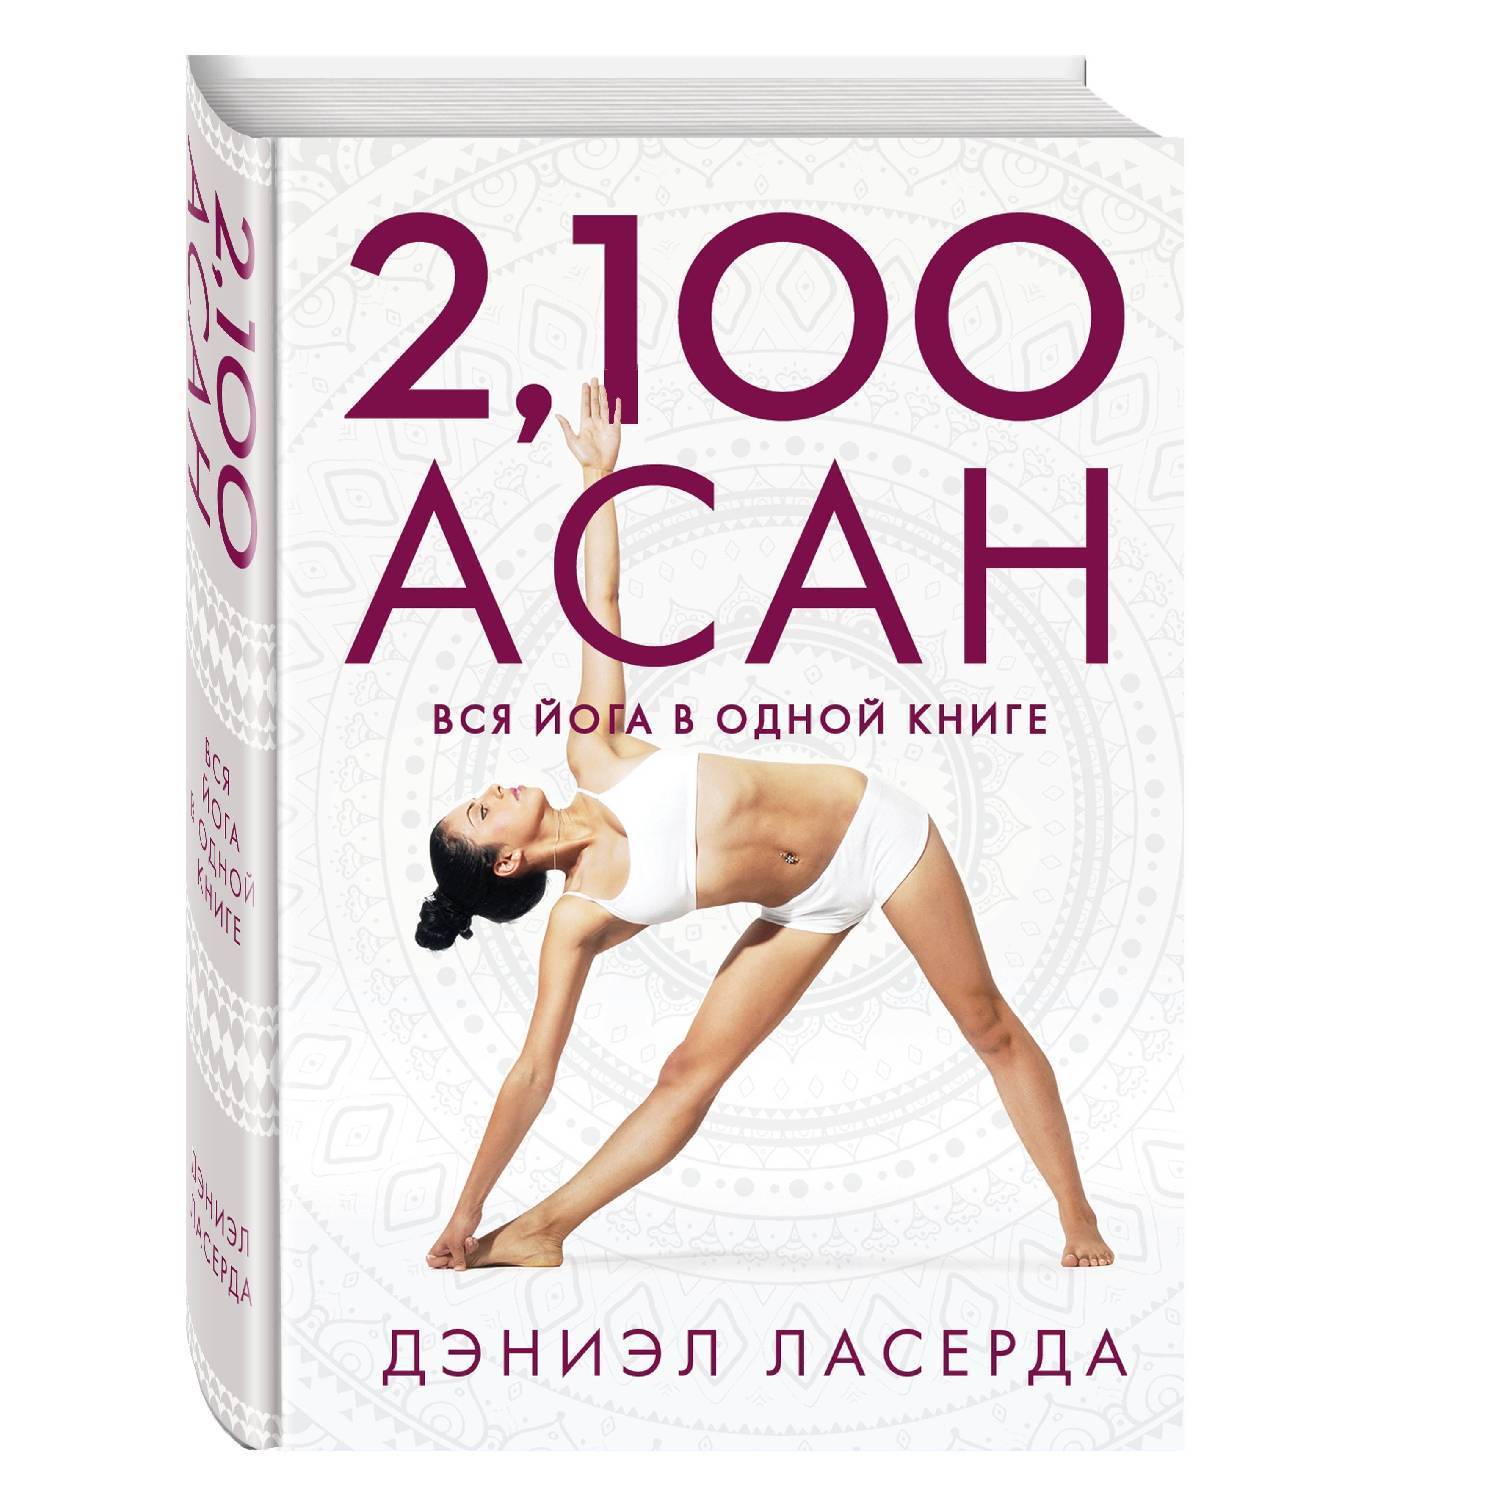 Йога дипика: прояснение йоги - читать онлайн бесплатно полную версию книги или скачать в формате fb2